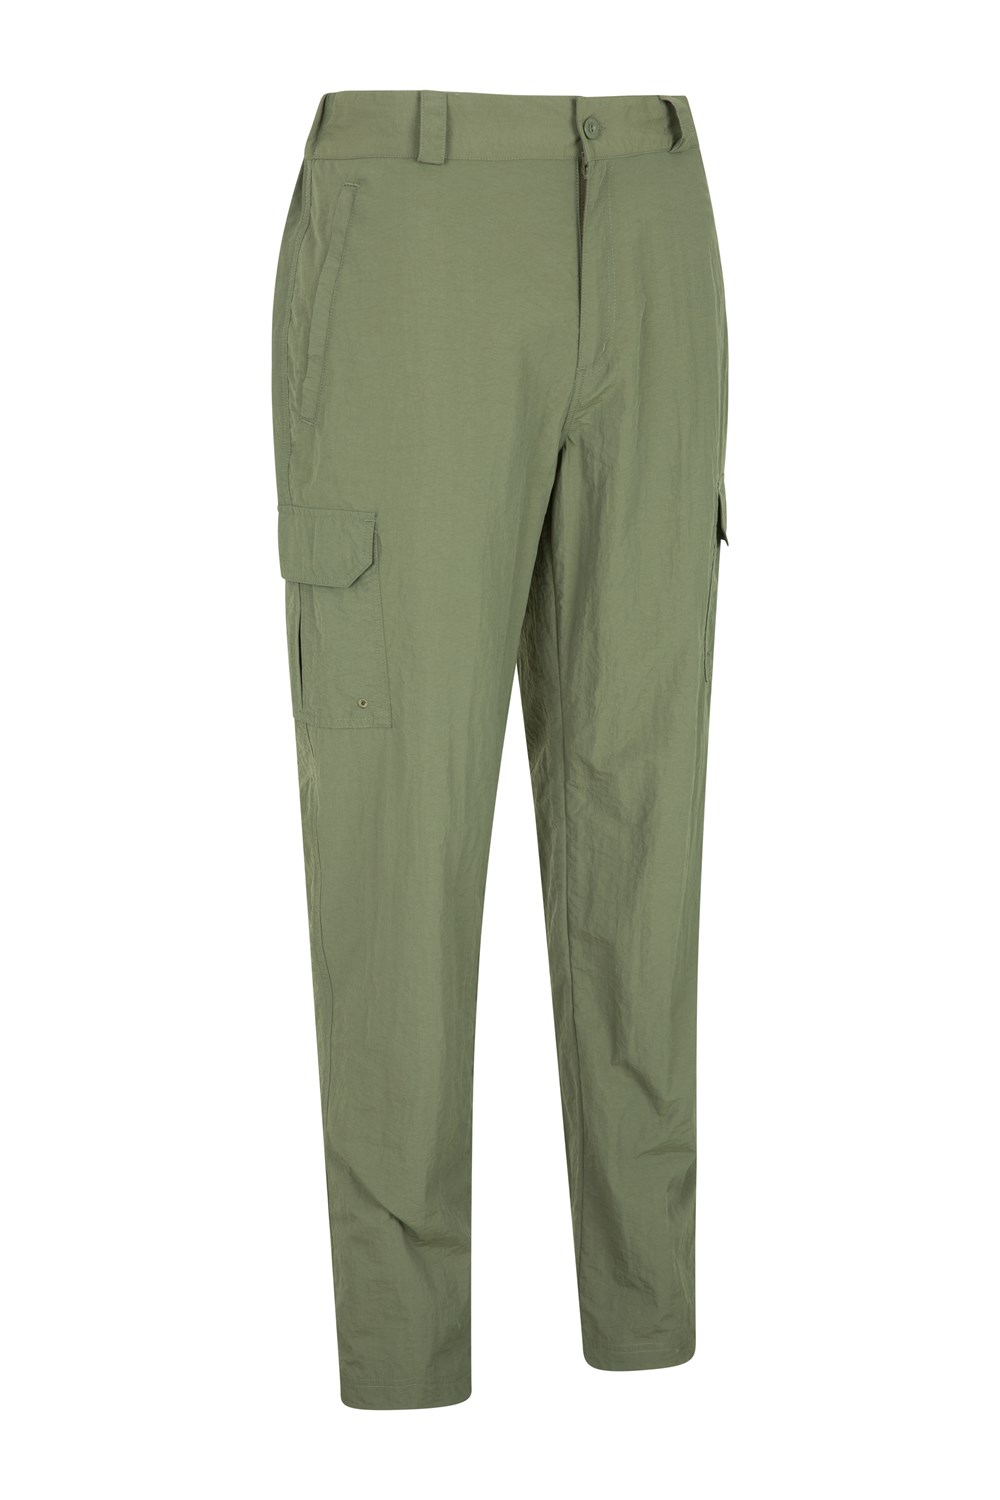 Mountain Warehouse Homme 100/% Nylon Explorer Pantalon avec plusieurs poches